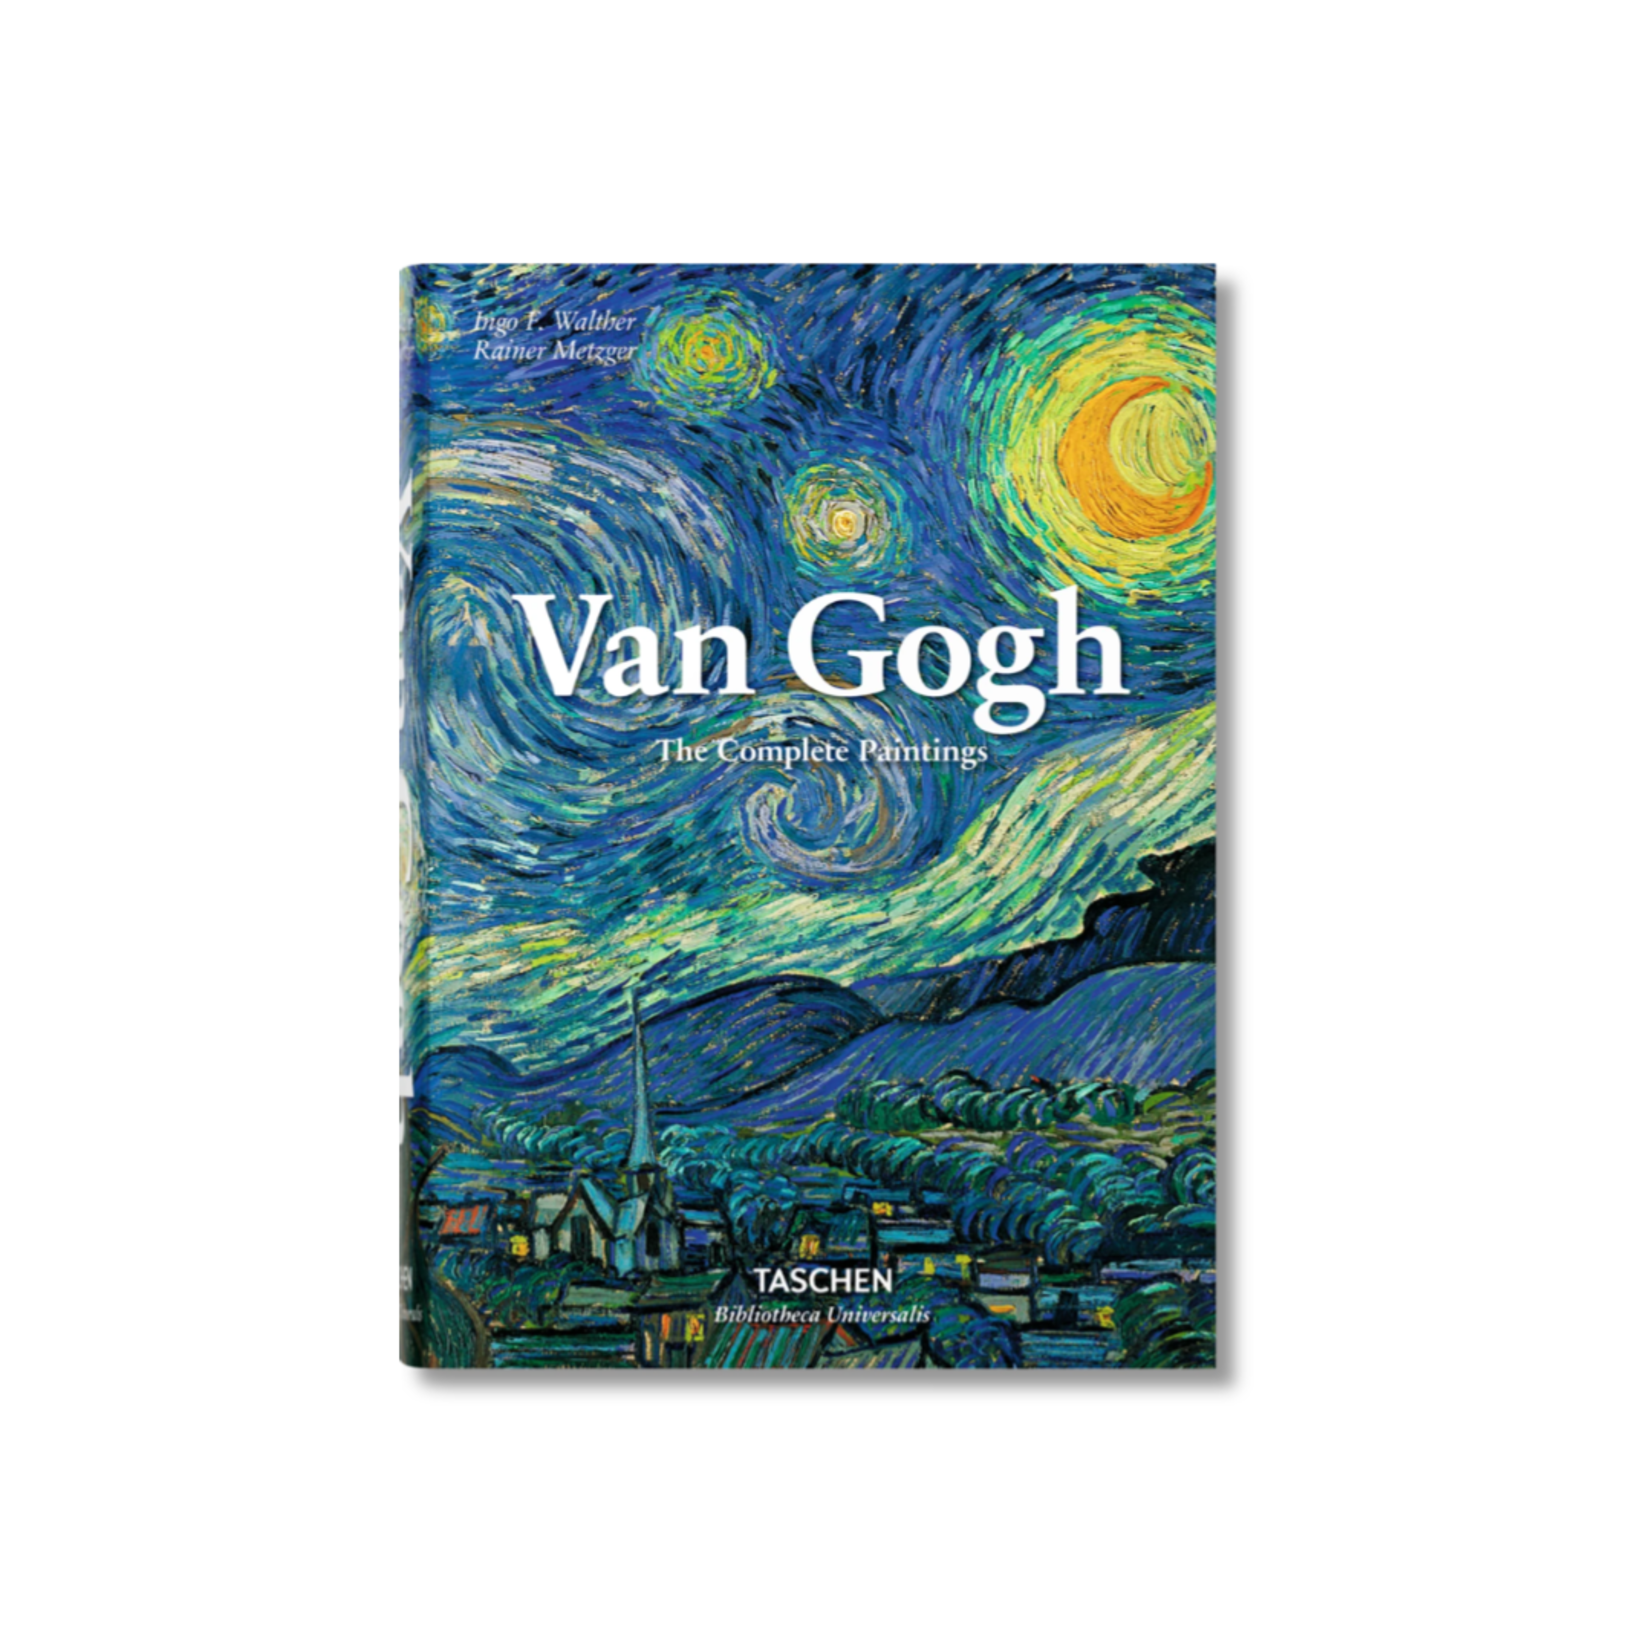 VAN GOGH: THE COMPLETE PAINTINGS